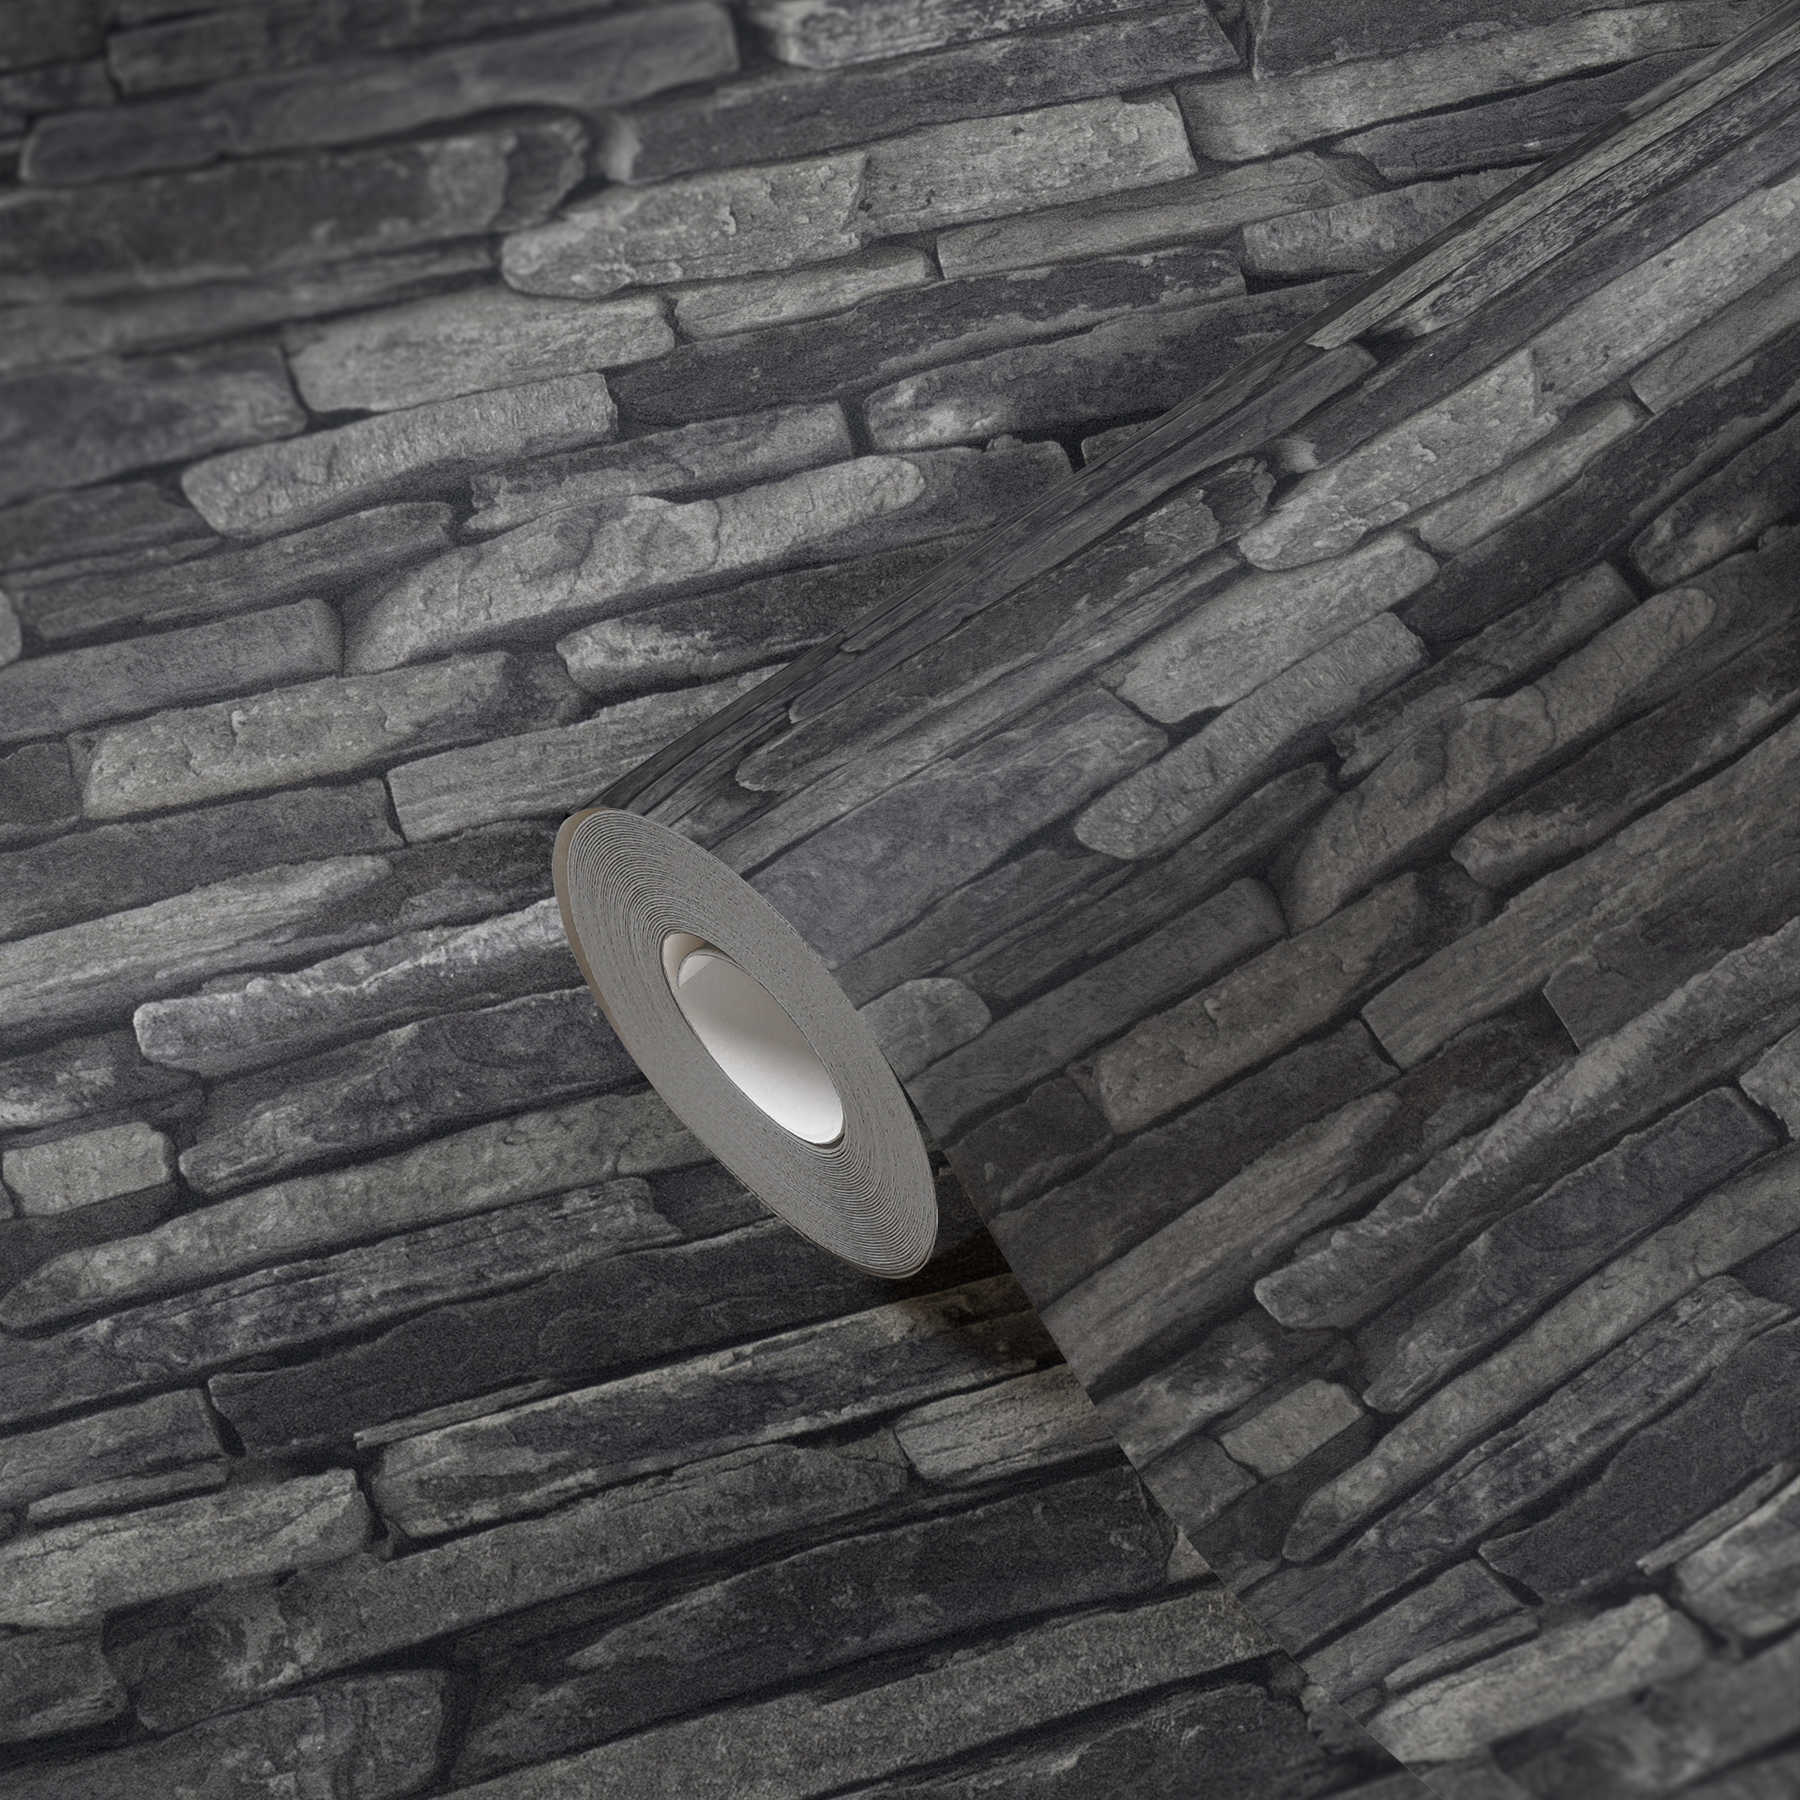             Papier peint imitation pierre, pierres naturelles foncées & effet 3D - gris, noir
        